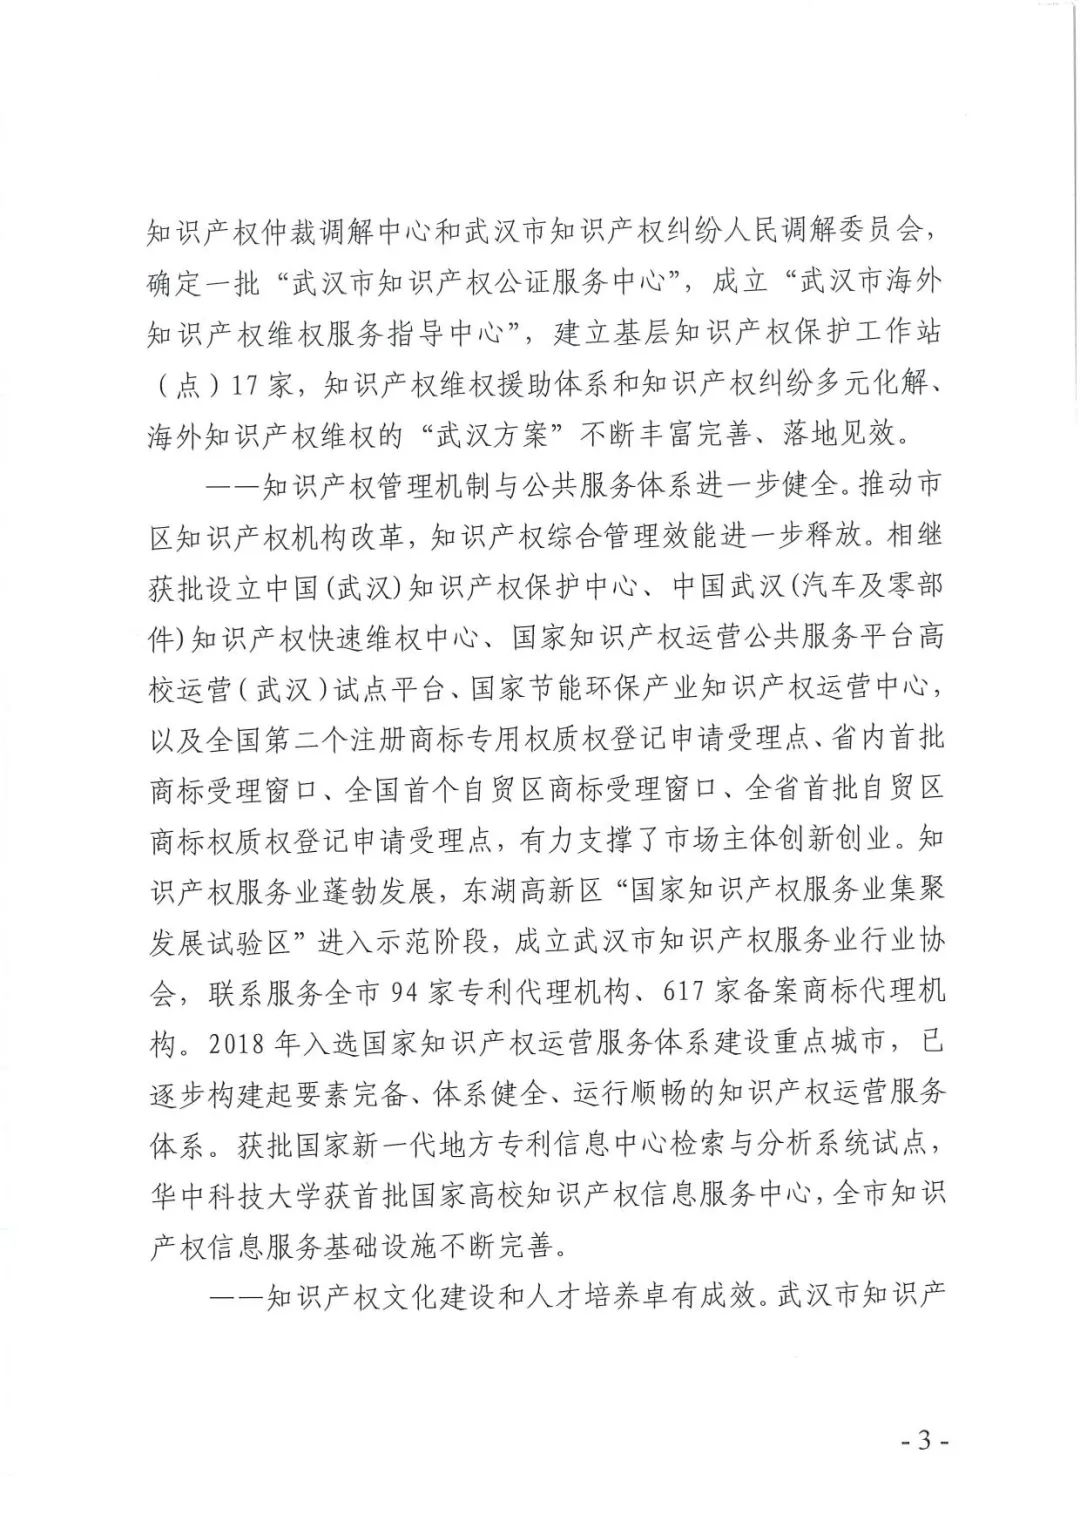 《武汉市知识产权“十四五”规划》全文发布